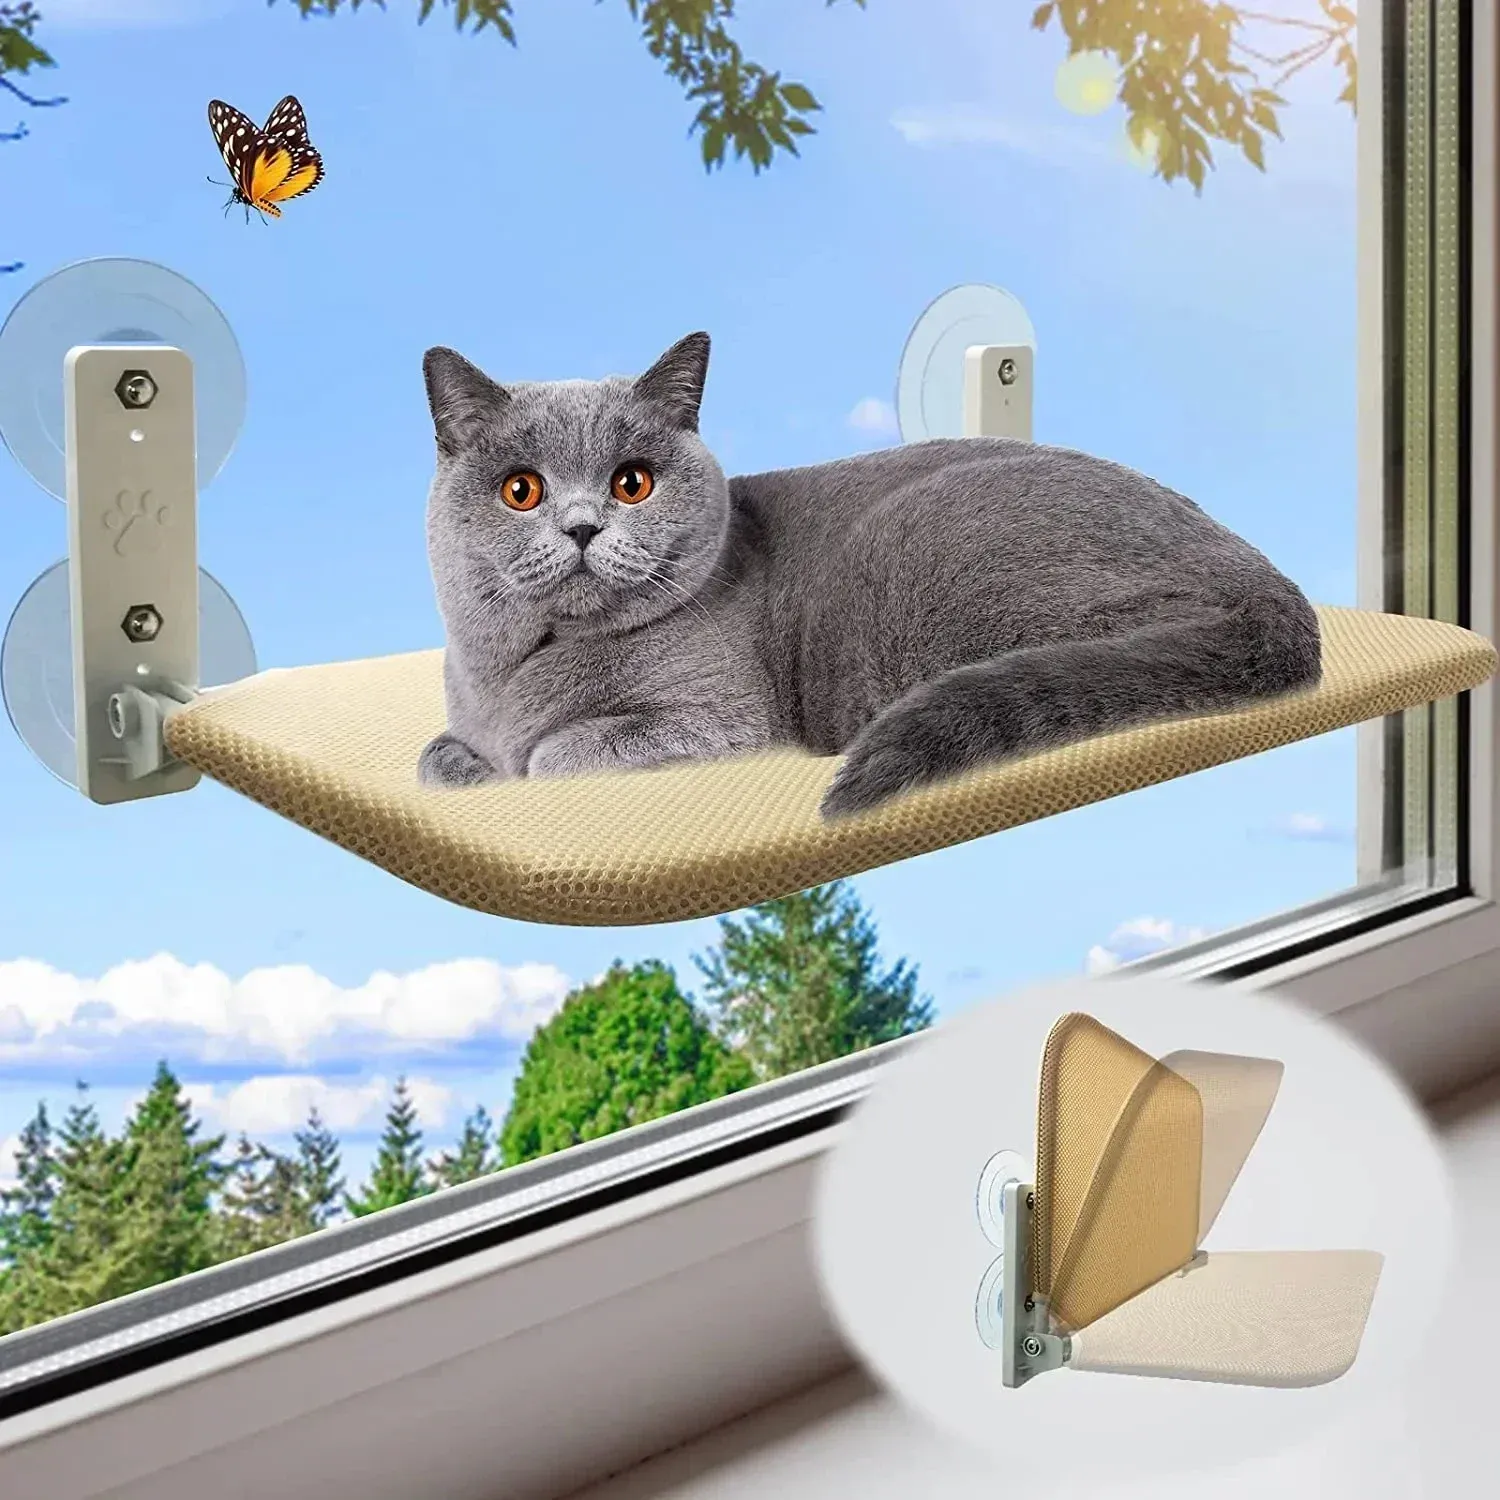 Tapis 1 pièces hamac pliable pour chat fenêtre tissu respirant rebord de fenêtre lit pour chat capacité de 10 kg litière pour chat accessoires pour chat fournitures pour chat